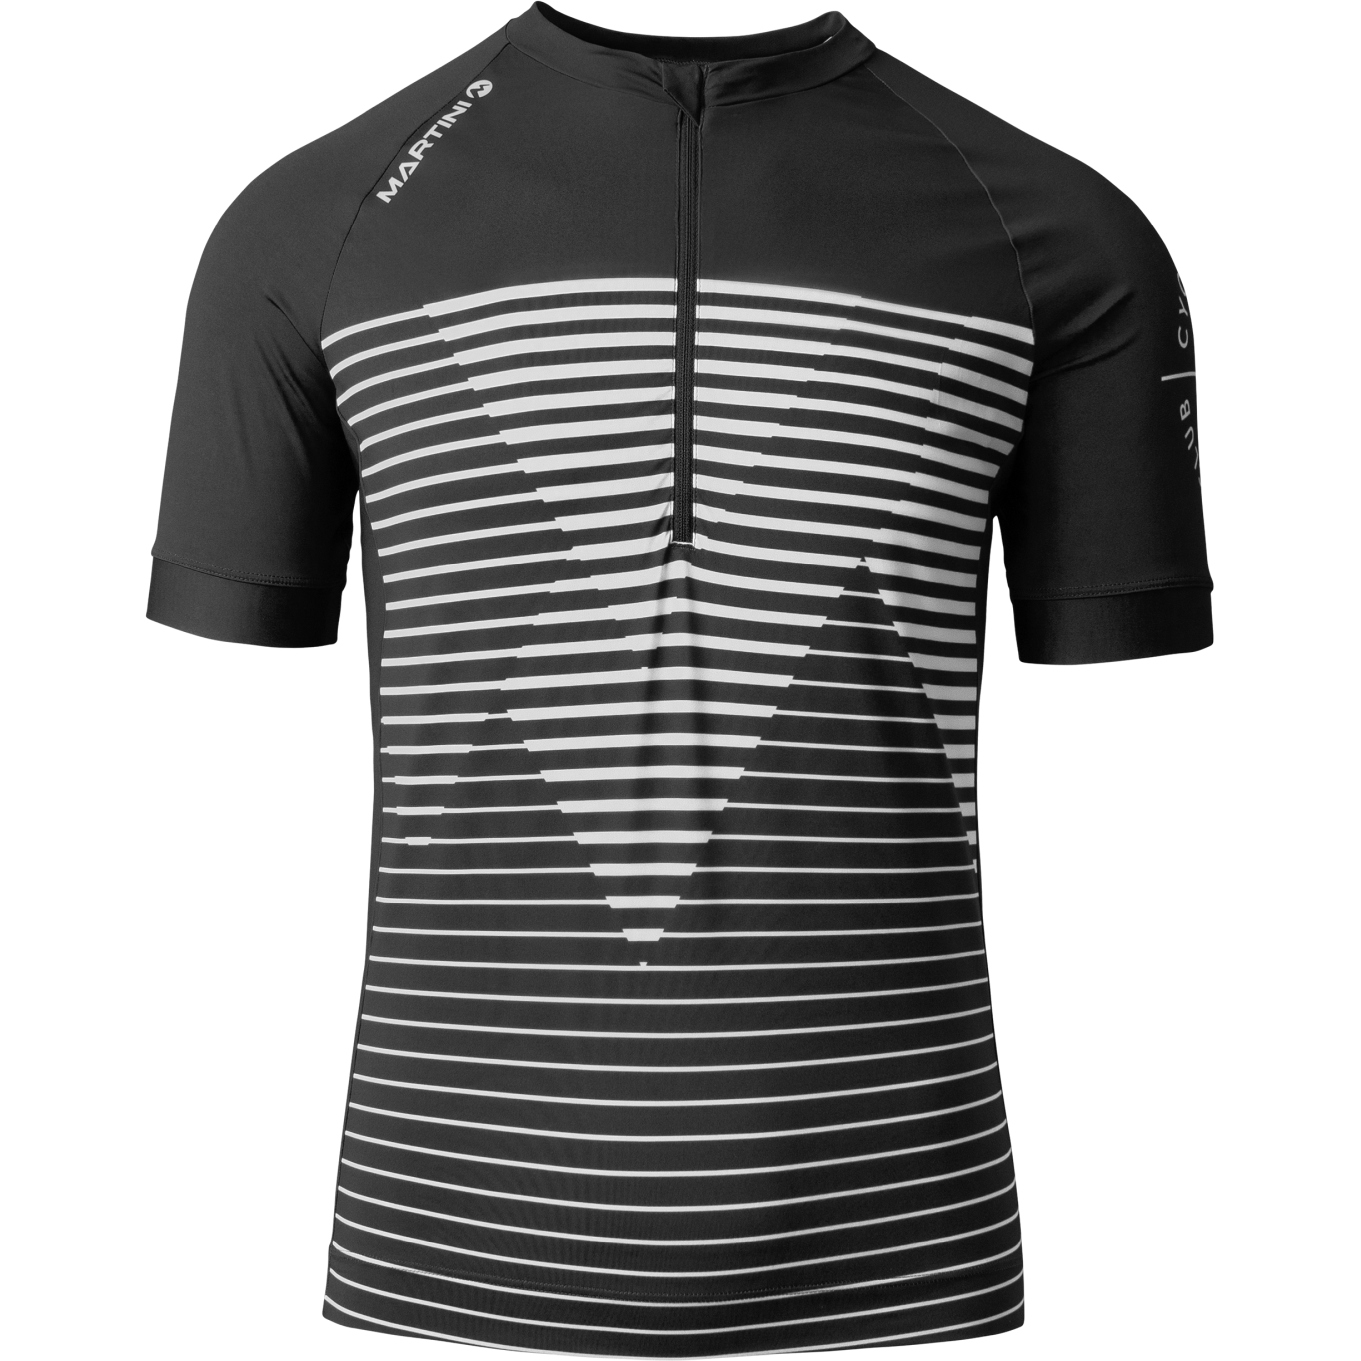 Produktbild von Martini Sportswear Flowtrail Halfzip Dynamic Kurzarmtrikot Herren - schwarz/weiß